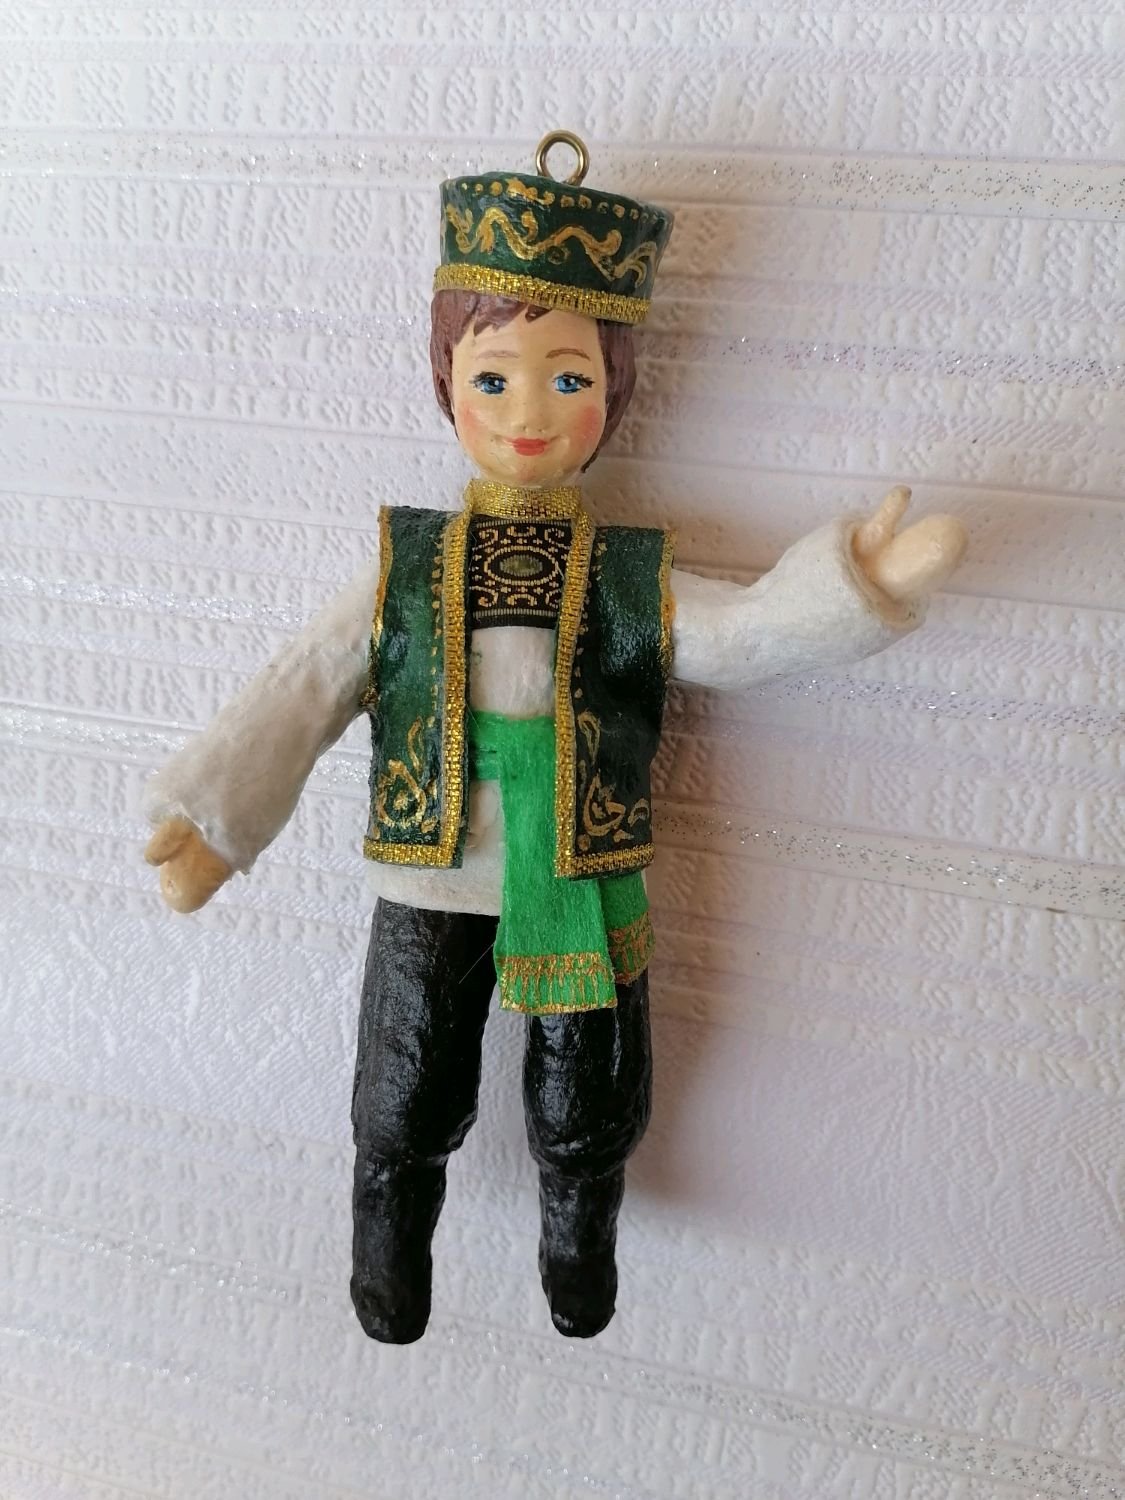 Татарские куклы в национальных костюмах